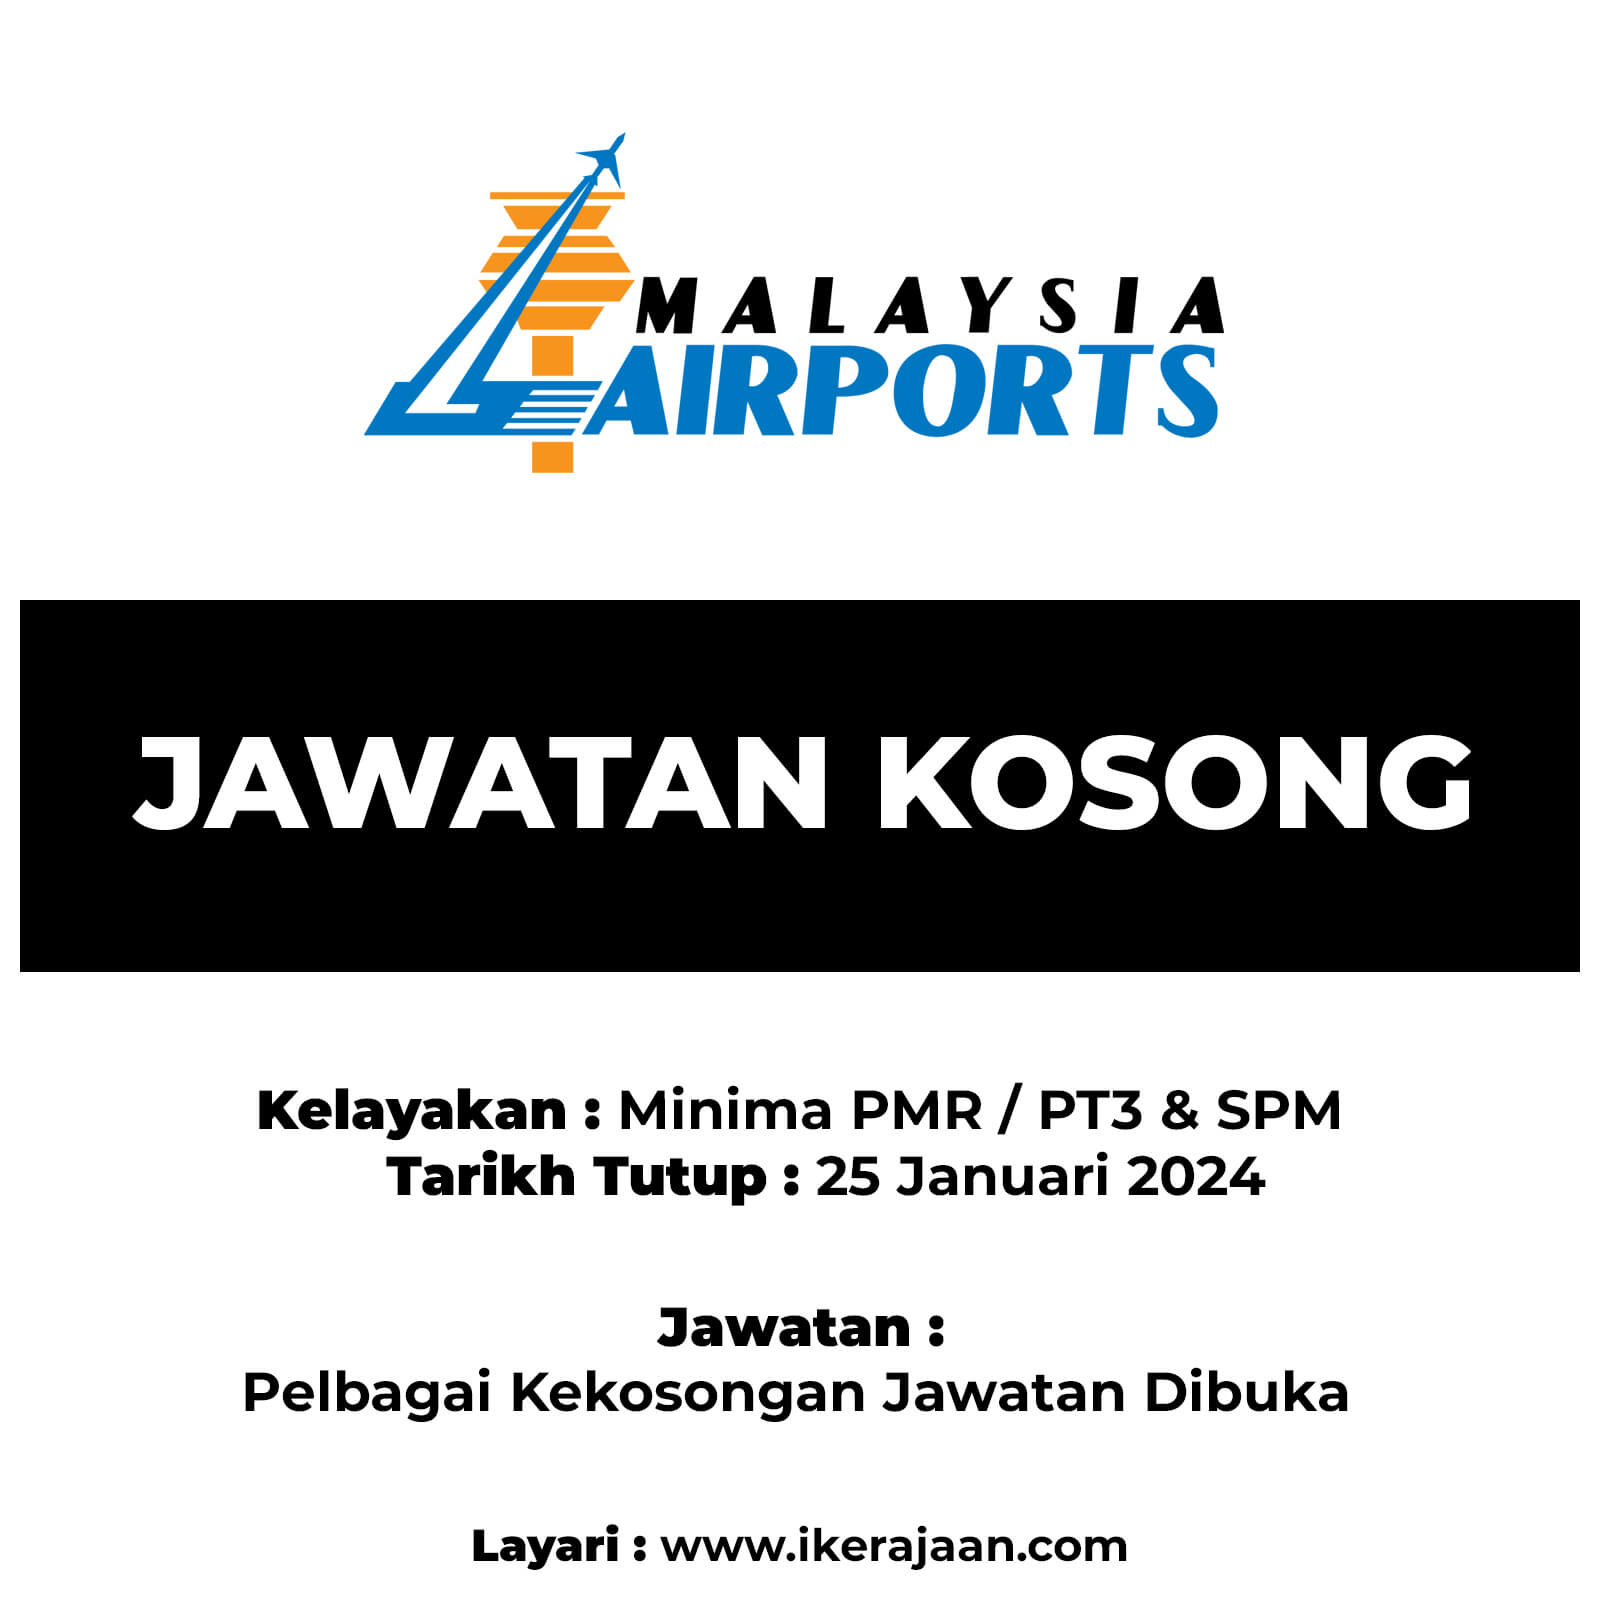 Jawatan Kosong Malaysia Airports